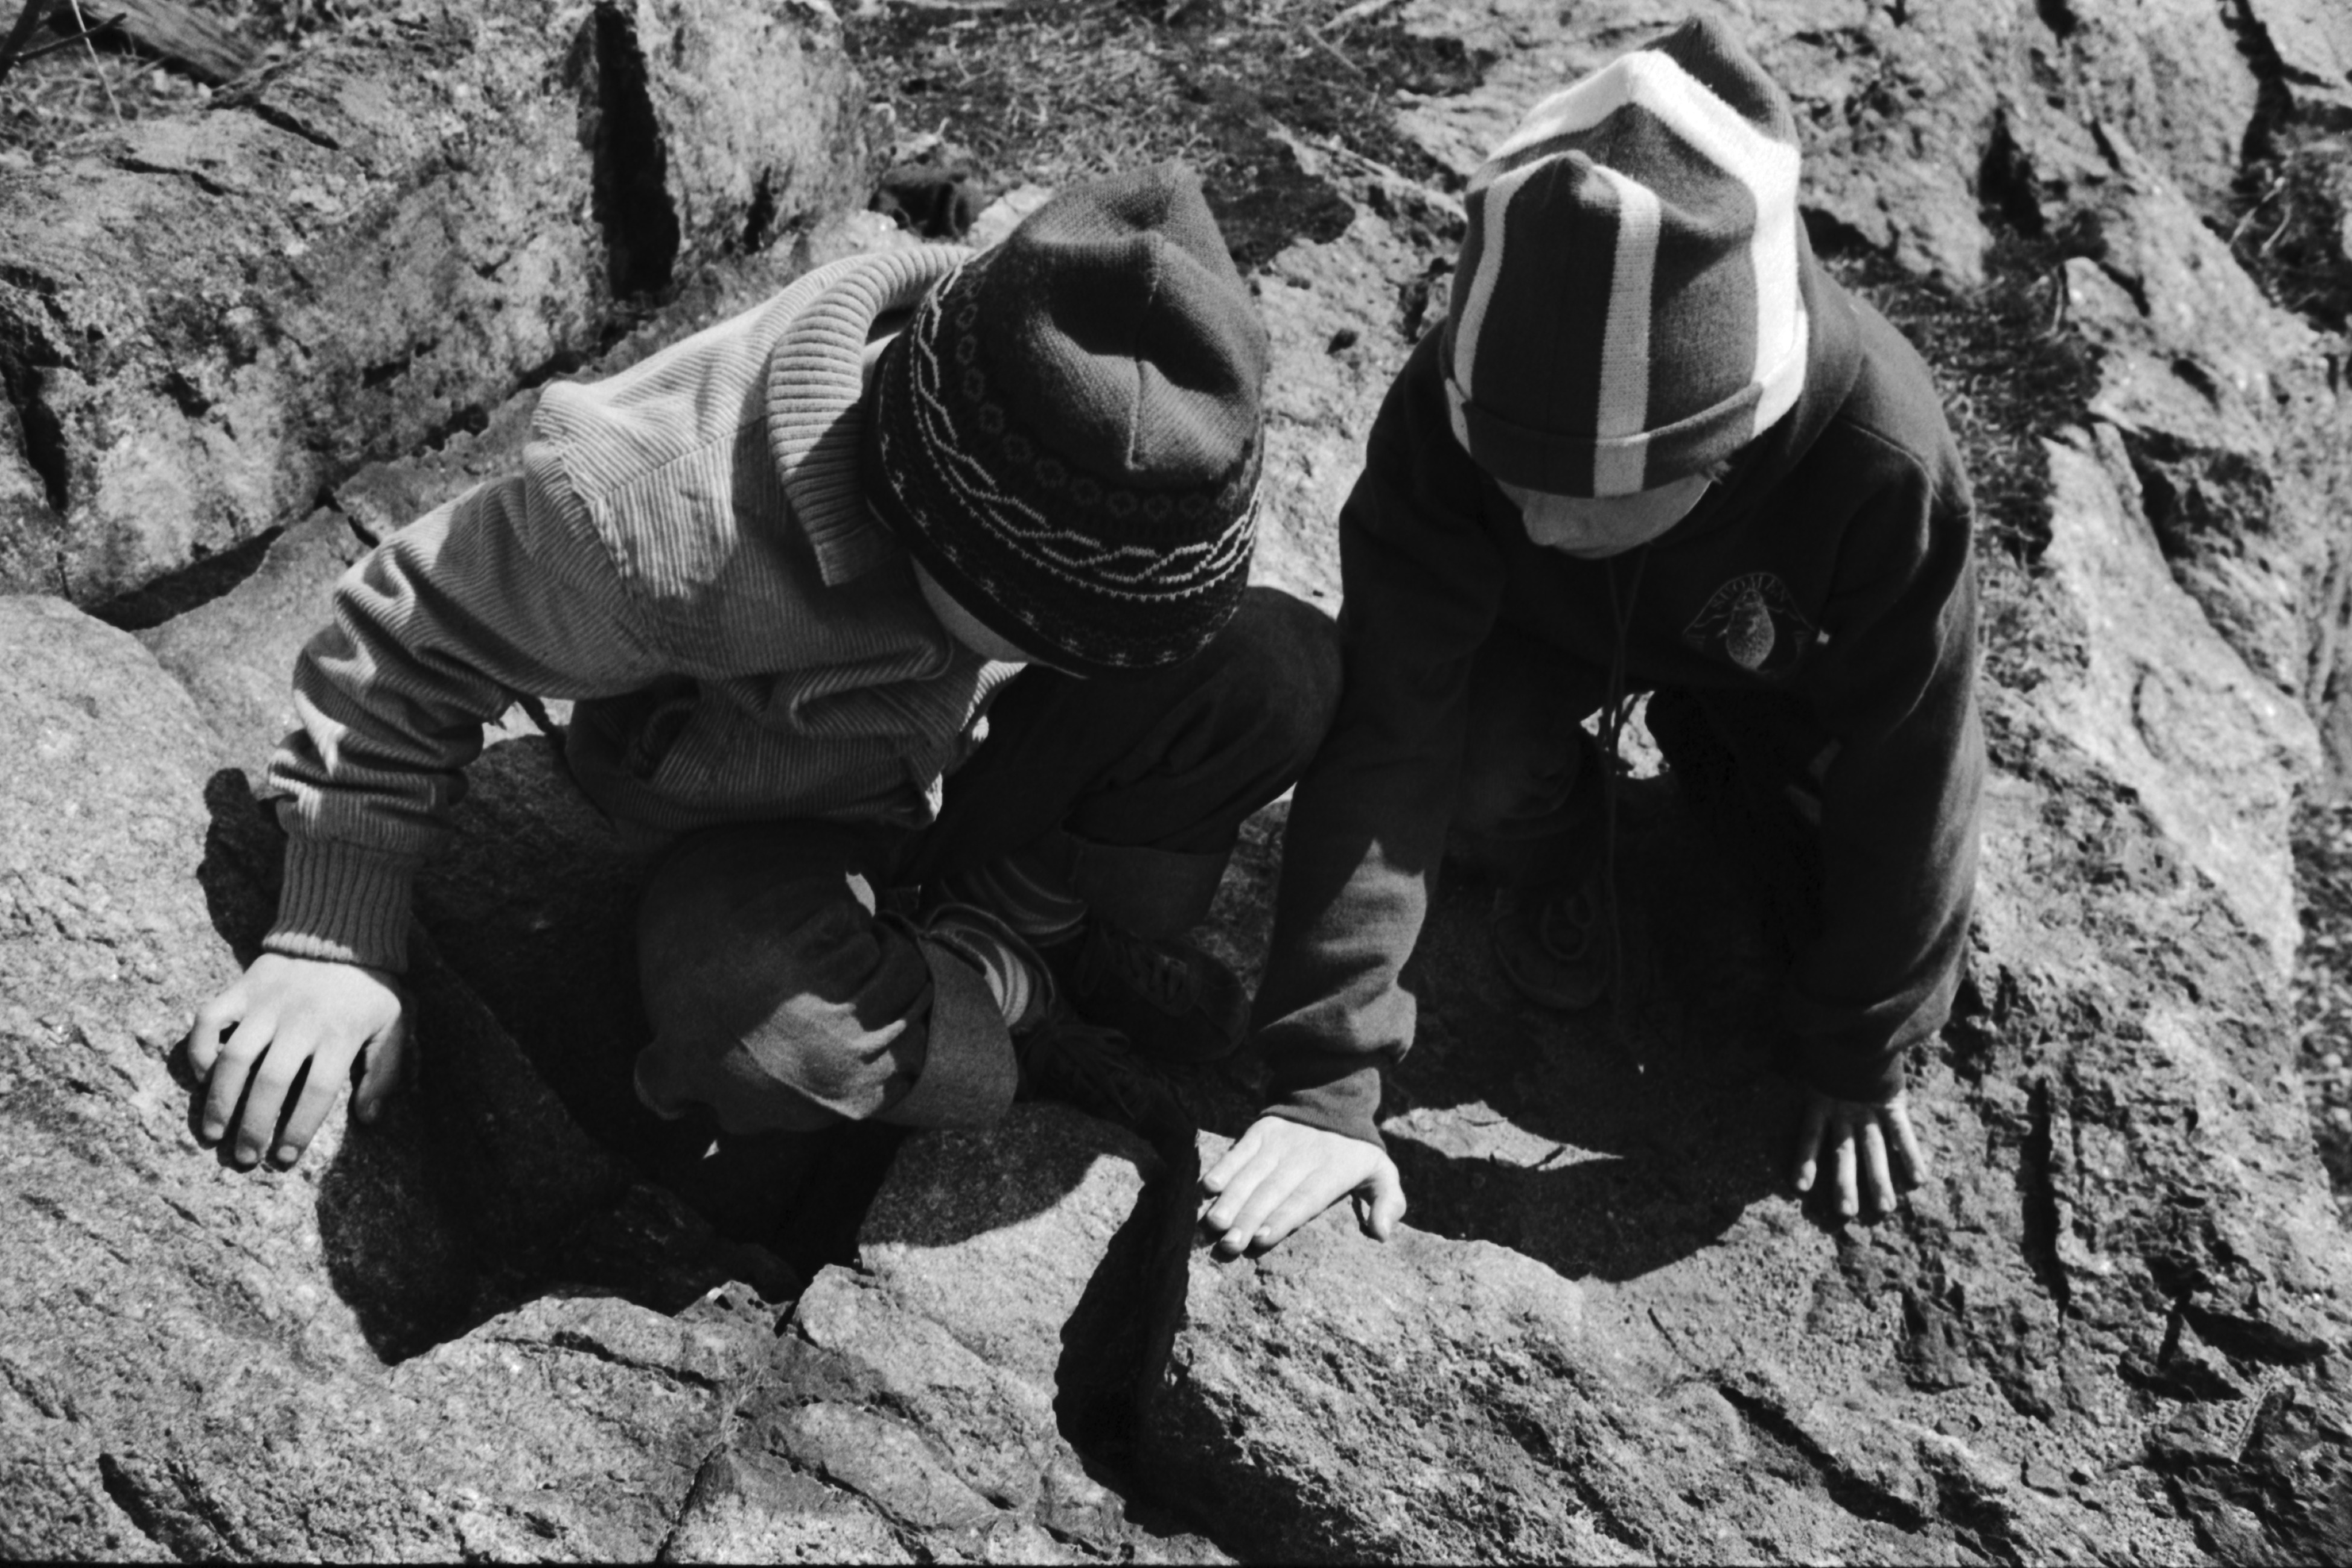 Linnunlauluntie. Kaksi poikaa (Aapo Rista ja Tuomas Heikkilä) tutkimassa keväistä luontoa Linnunlaulun kallioilla pääradan varressa. Muurahaiset ovat ilmestyneet pesistää.